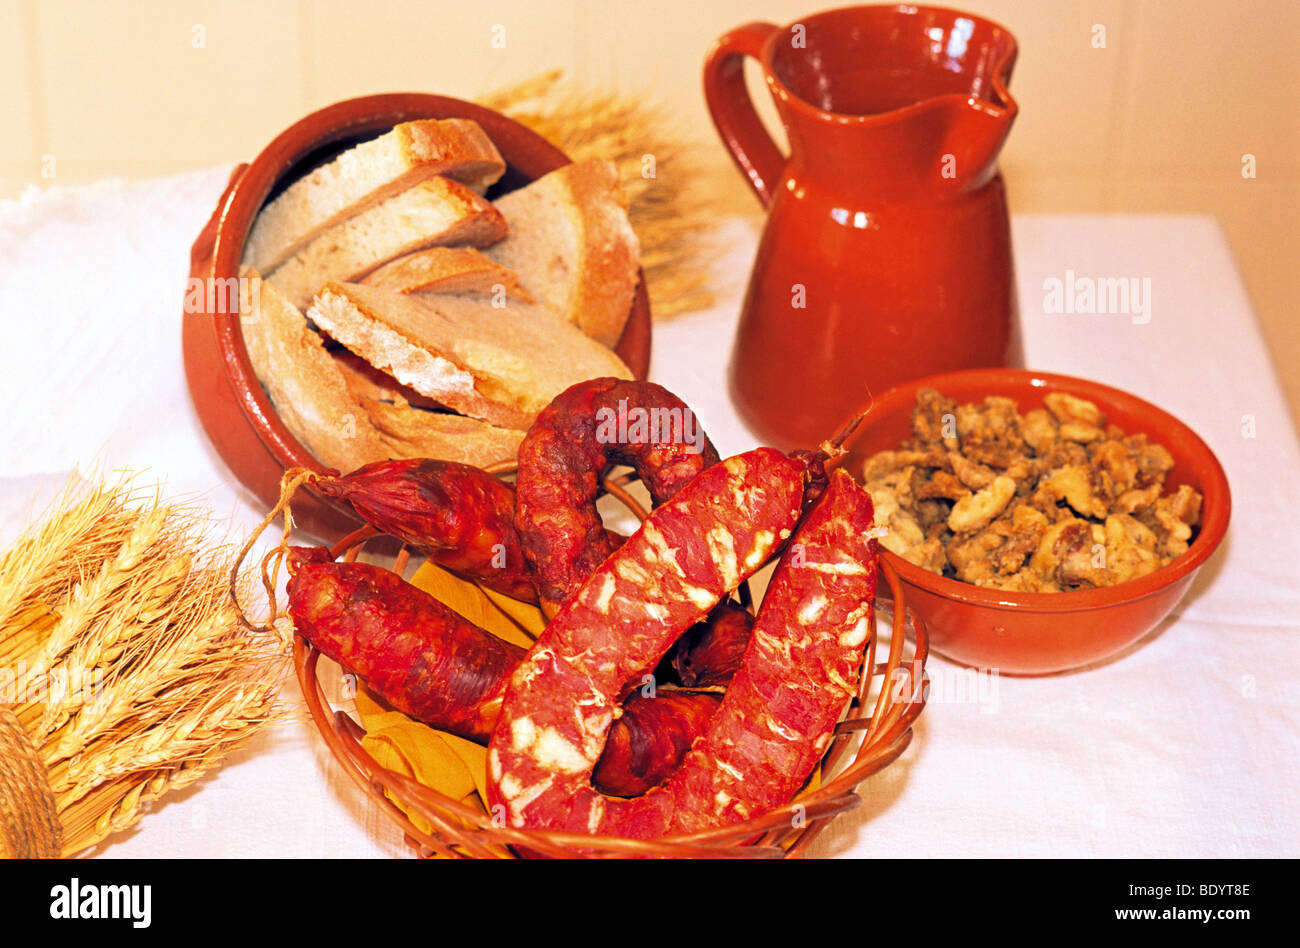 Le Portugal, l'Alentejo : des ingrédients traditionnels de la gastronomie de l'Alentejo rural Banque D'Images